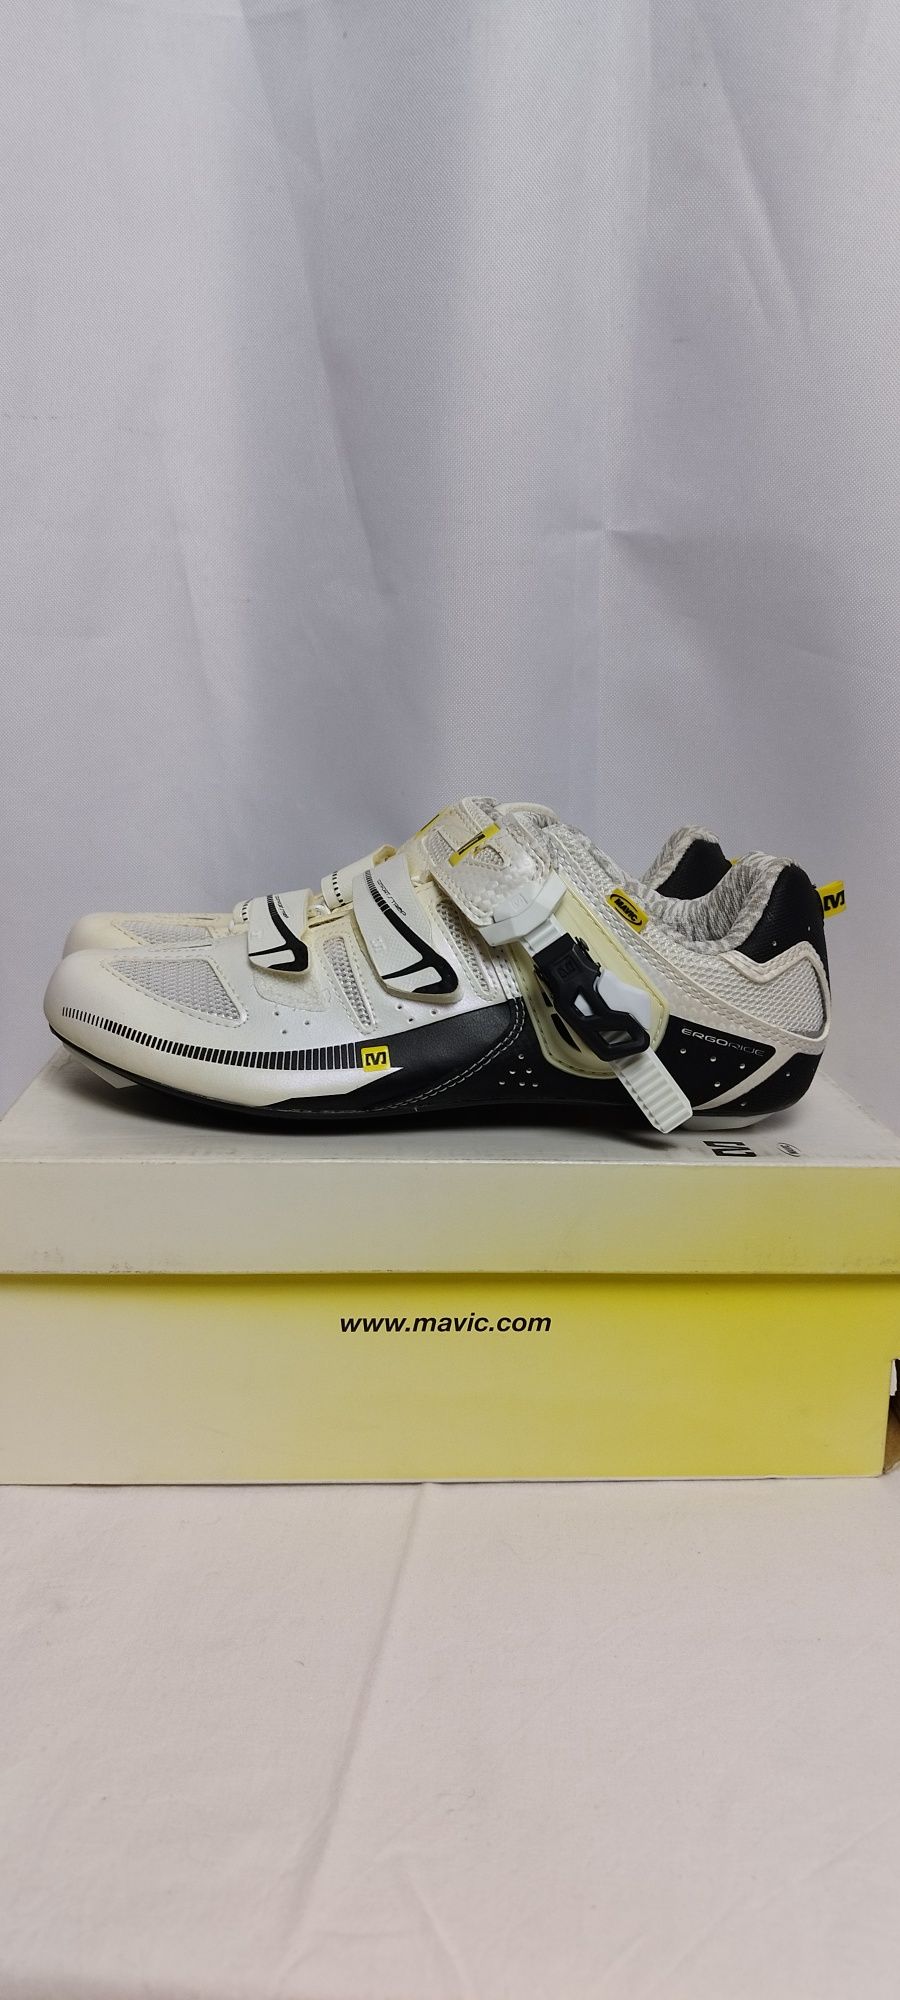 Nowe buty na rower szosowy Mavic Giova rozmiar 40 (25cm)